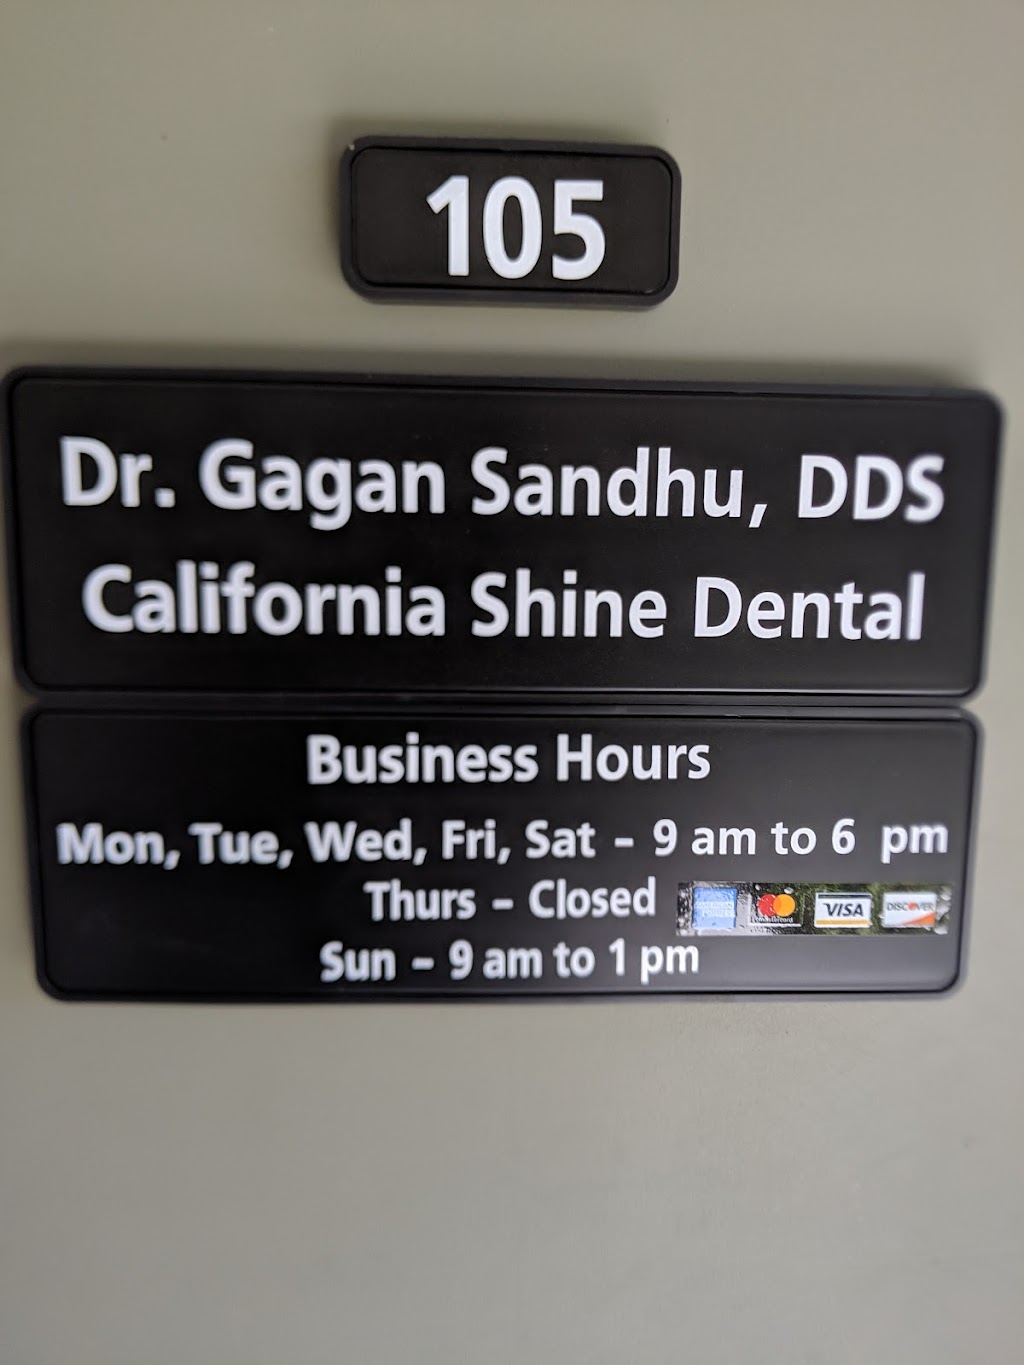 California Shine Dental - Jackson location | 105 N Jackson Ave #105, San Jose, CA 95116 | Phone: (408) 883-7777